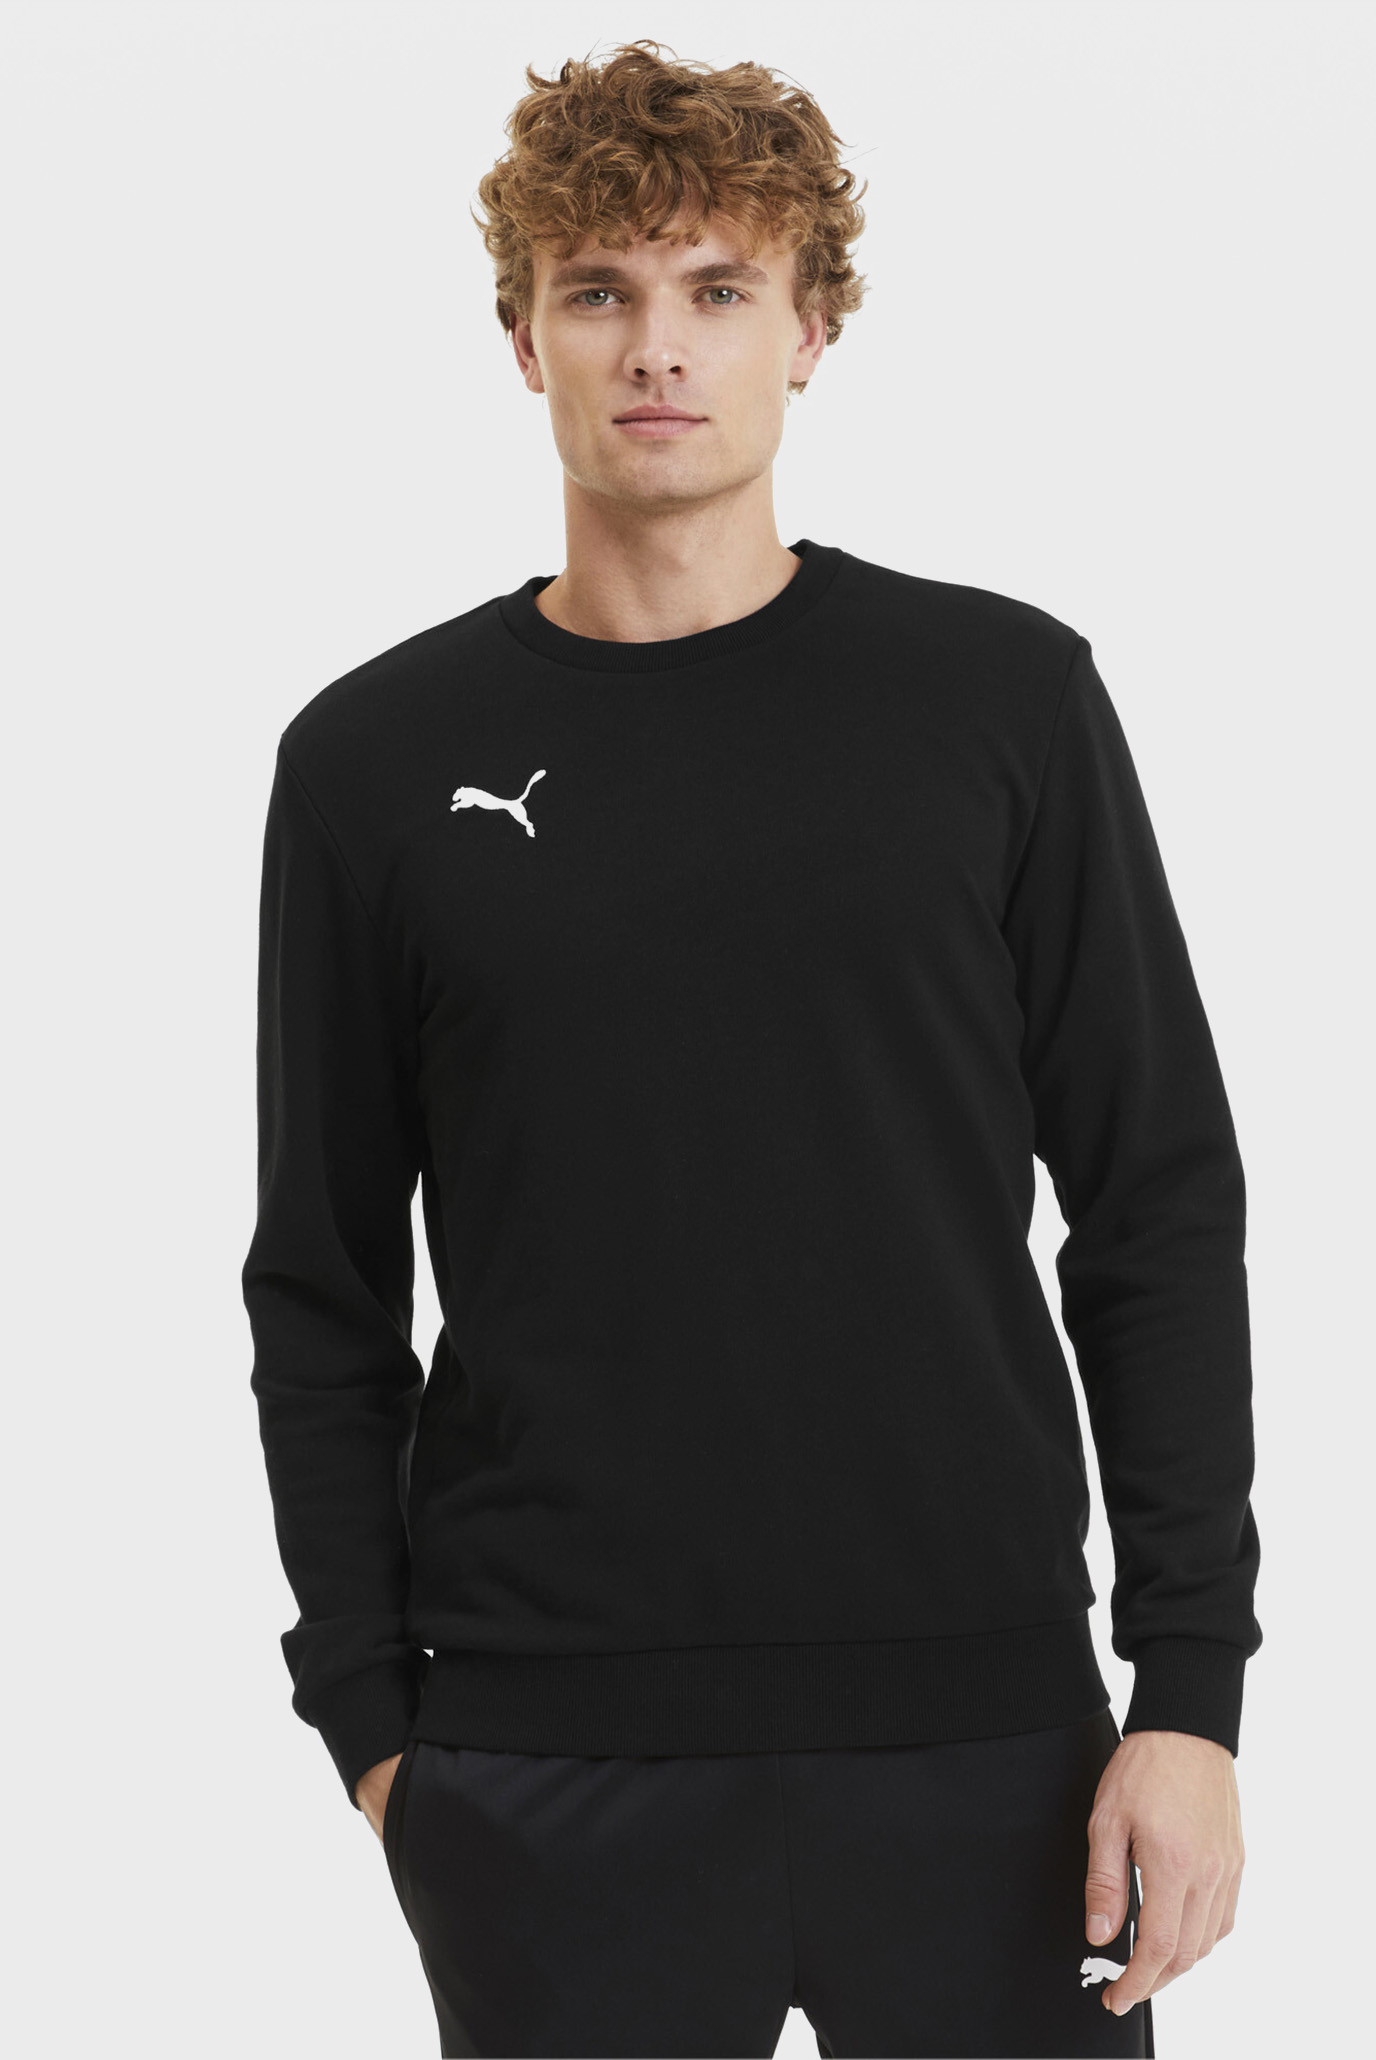 Мужской черный свитшот GOAL Casuals Men’s Sweater 1